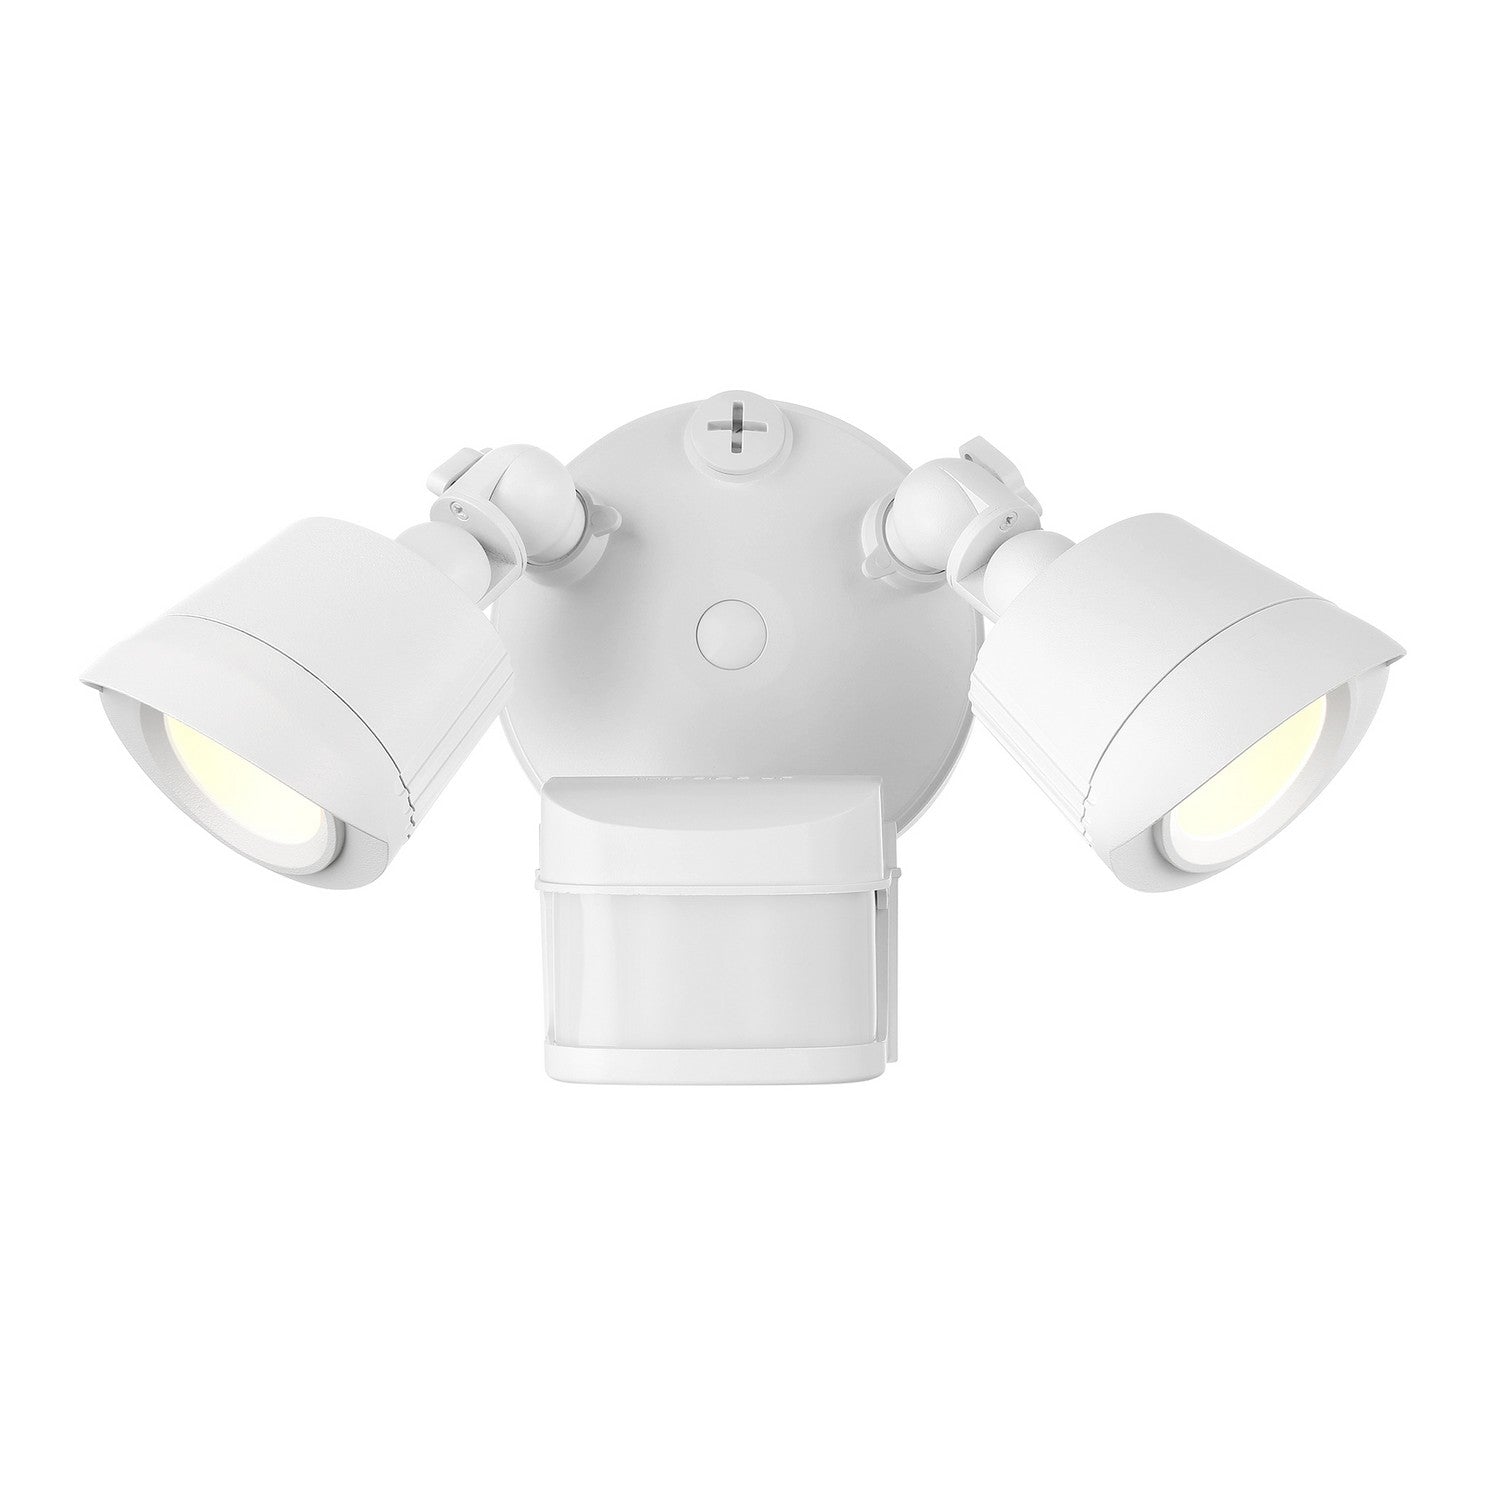 Savoy House - LED Motion Sensored Double Flood Light - White- Union Lighting Luminaires Decor